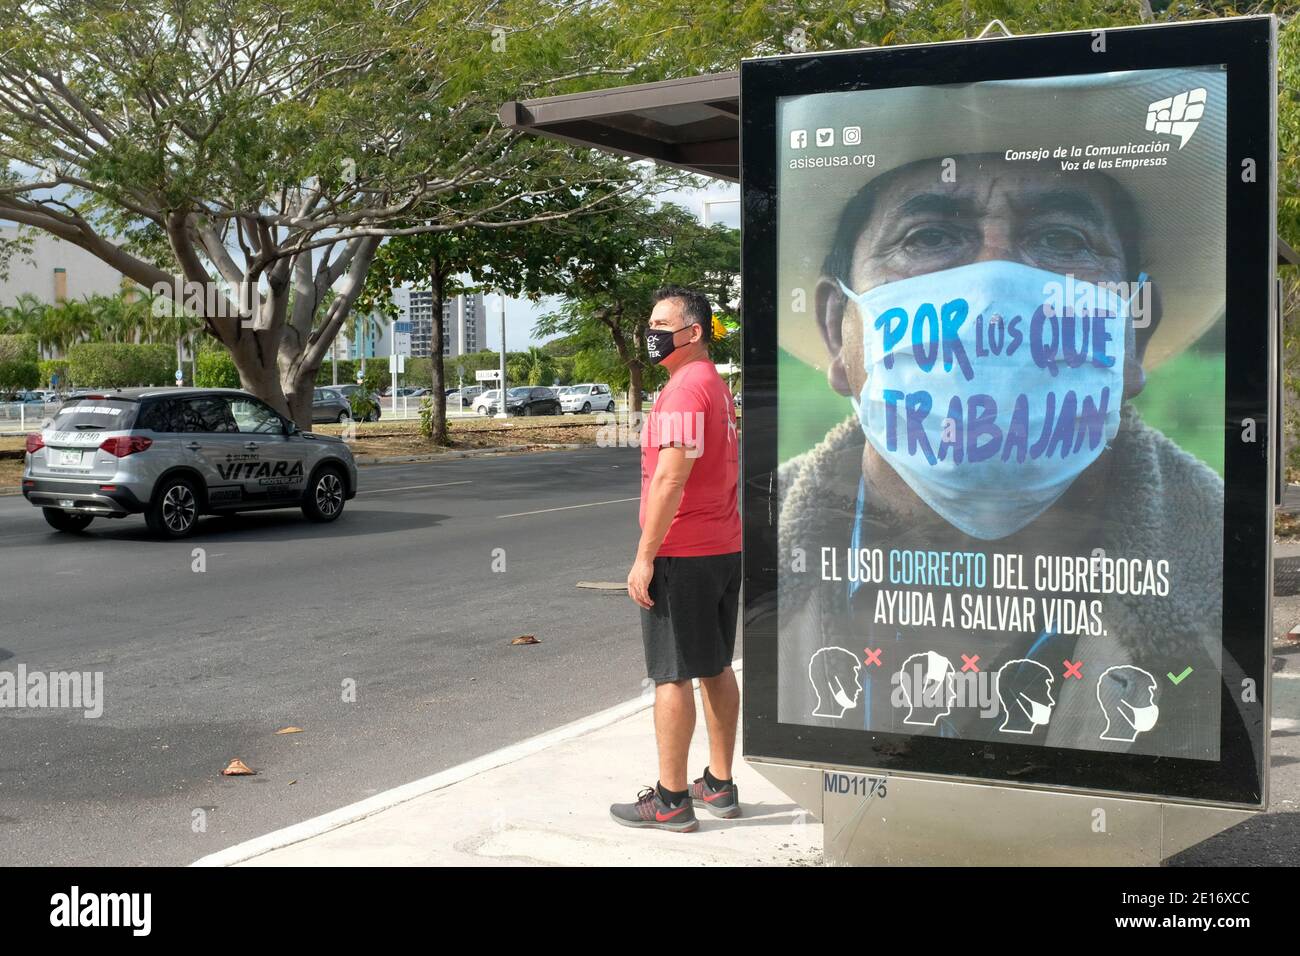 Mann wartet auf den Bus vor einer Werbung, die Menschen ermutigt, Gesichtsmasken während der Pandemie von Covid 19, Merida, Mexiko, zu tragen Stockfoto